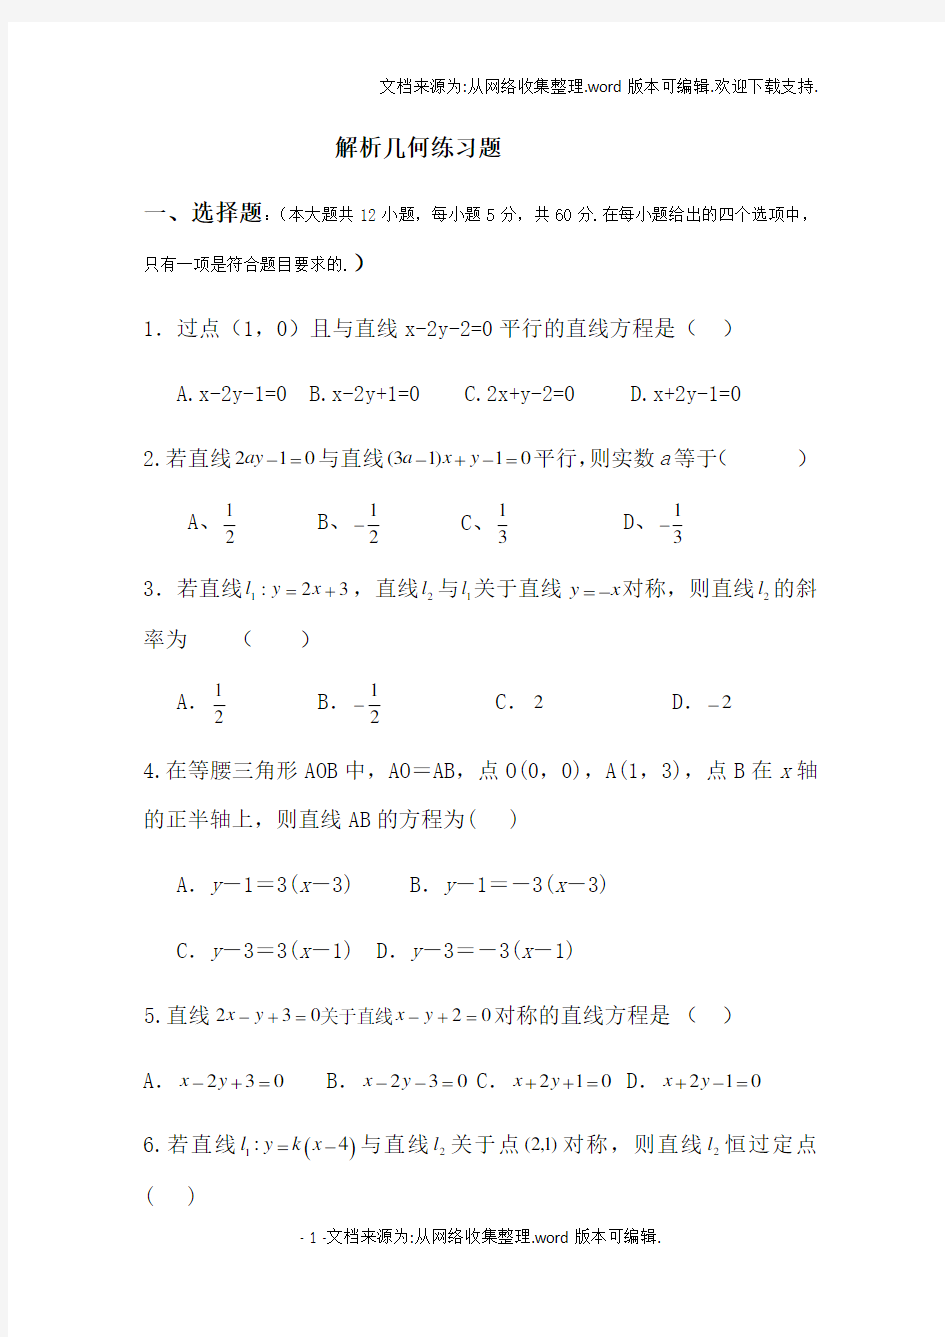 高中数学解析几何测试题答案版(供参考)